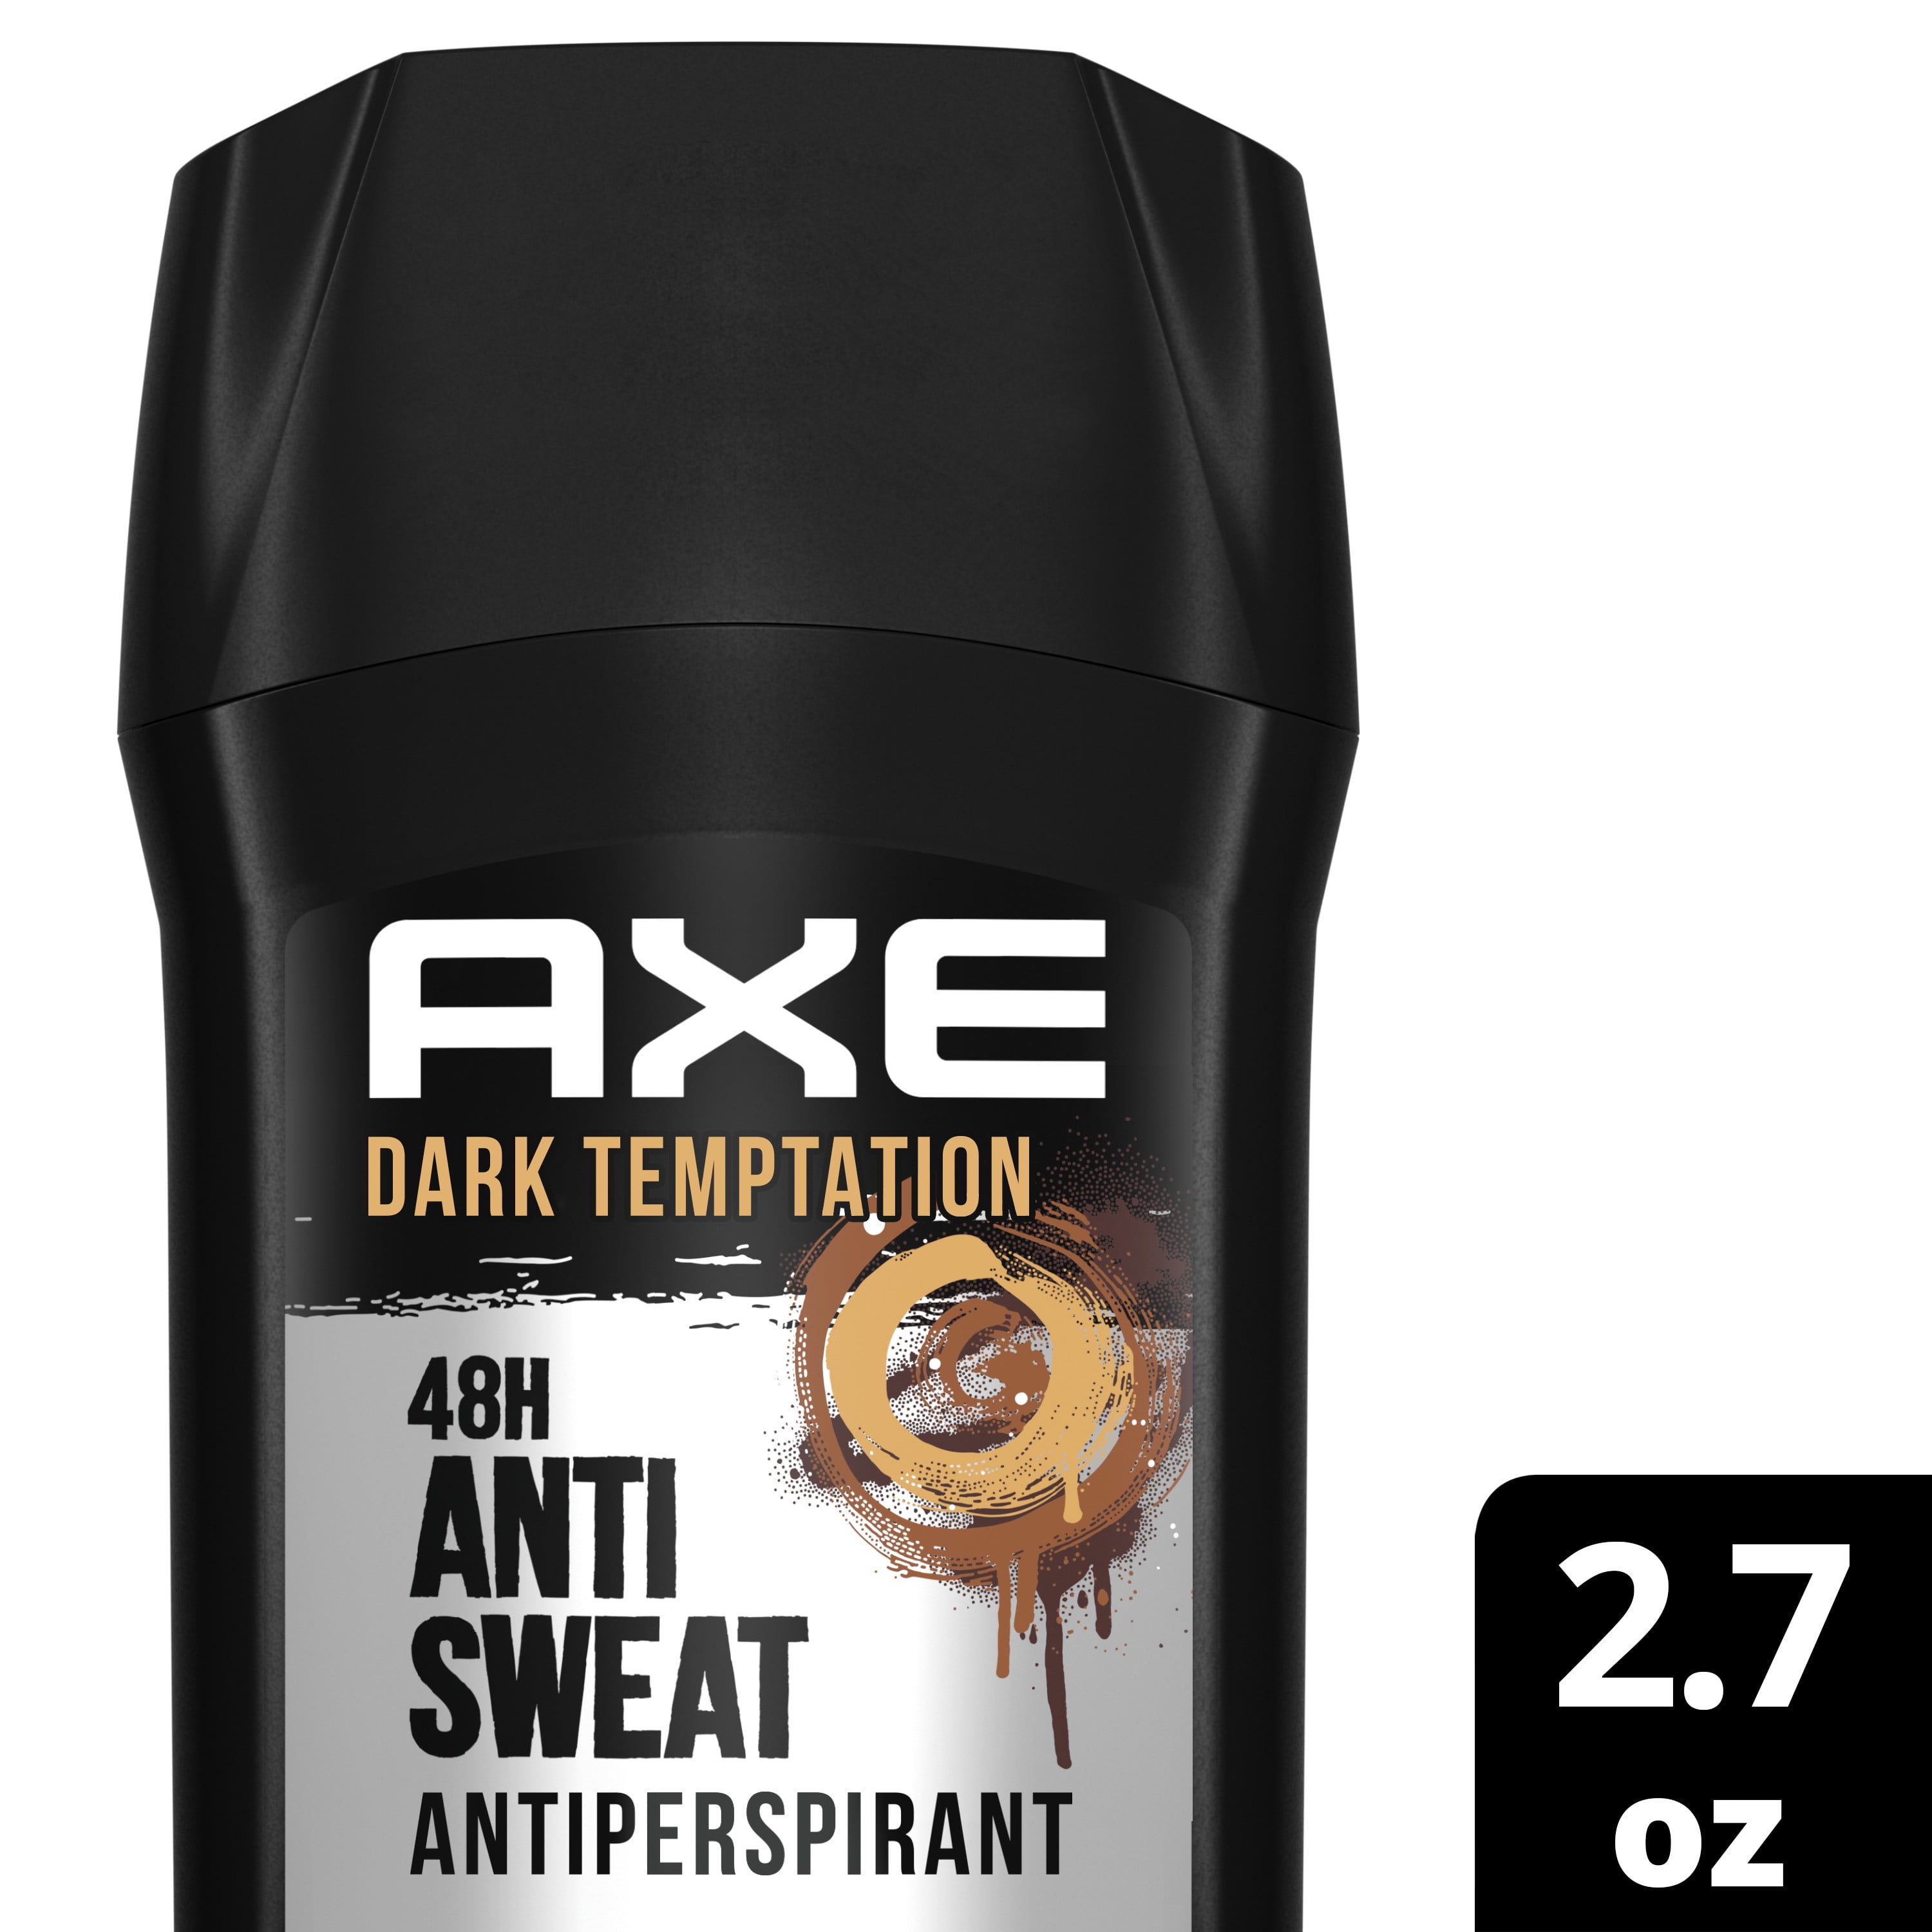 Barcelona Verrijken verhouding AXE Dual 48H Anti Sweat Dark Temptation Action Antiperspirant 2.7 oz -  Walmart.com